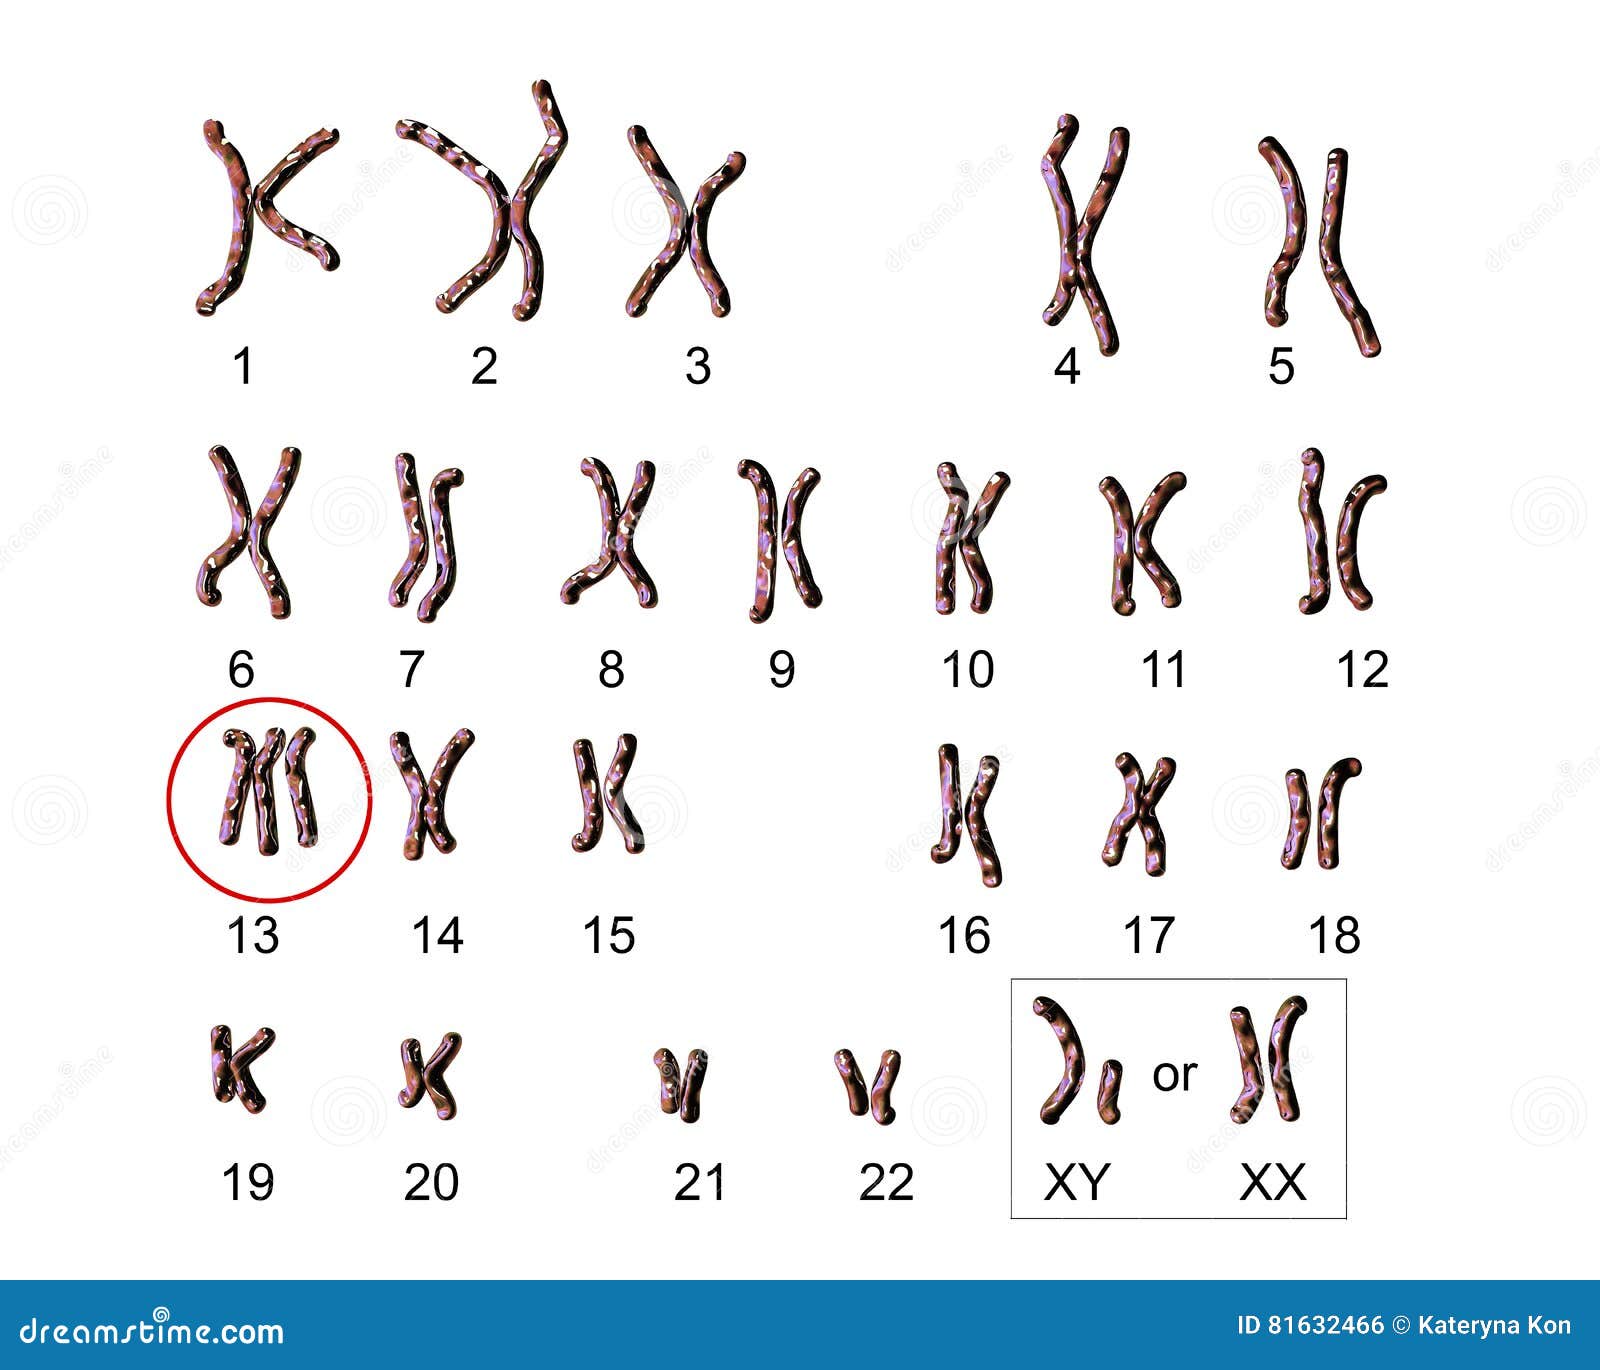 jacobs syndrome karyotype